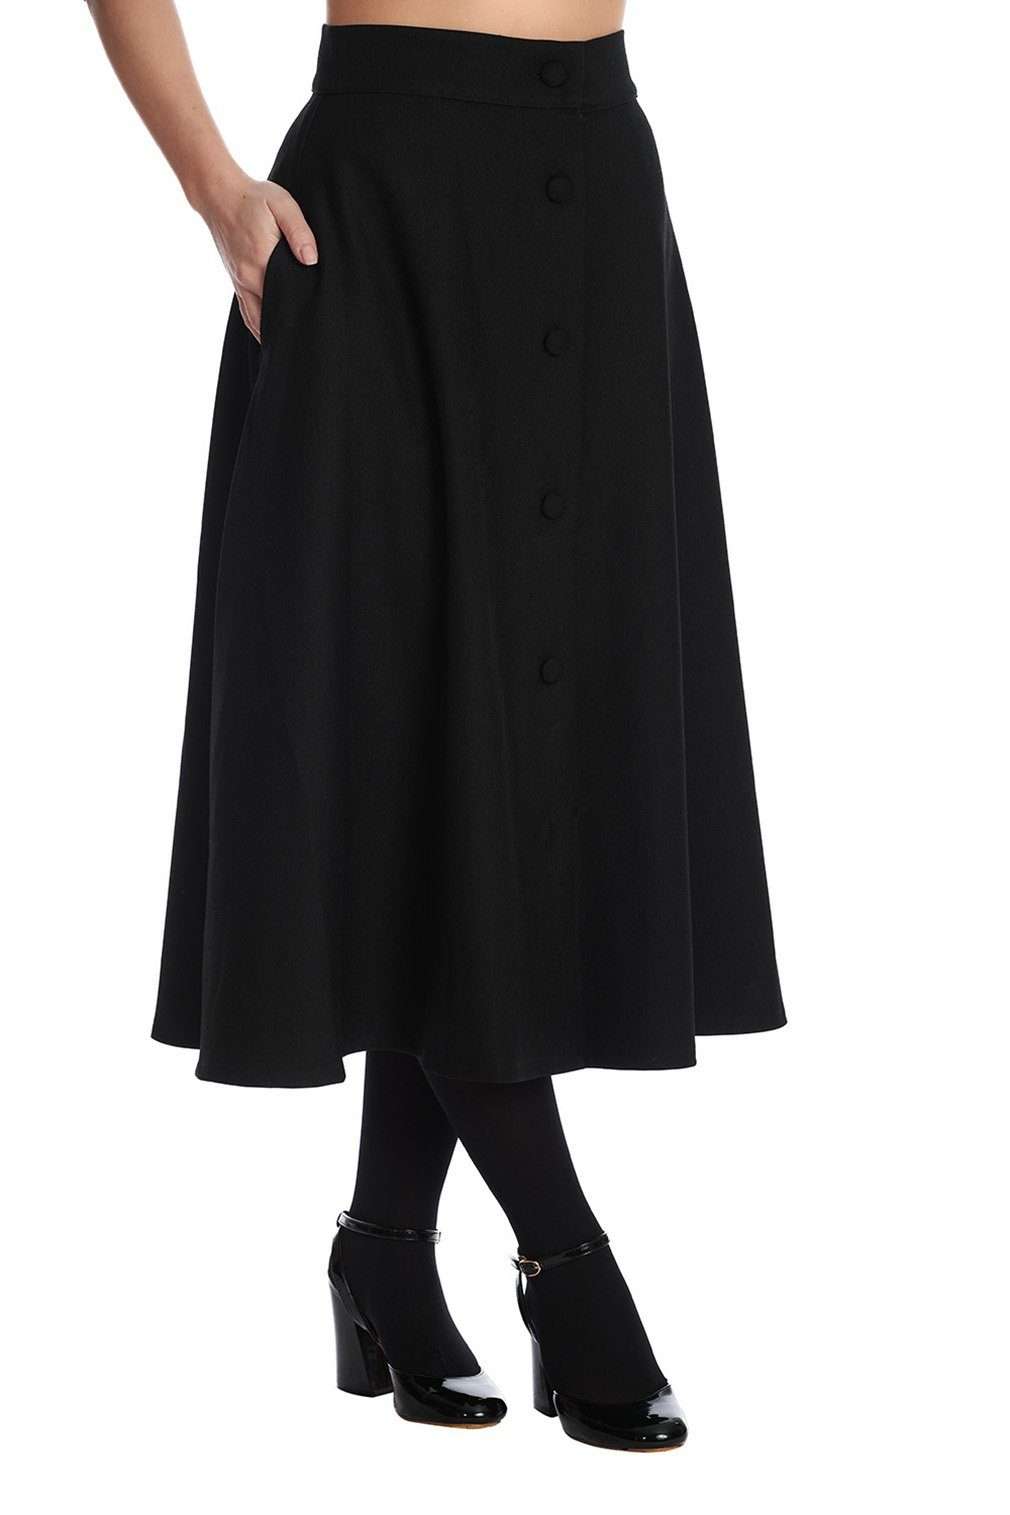 Юбка-трапеция Book Worm Черная винтажная распашная юбка в стиле ретро